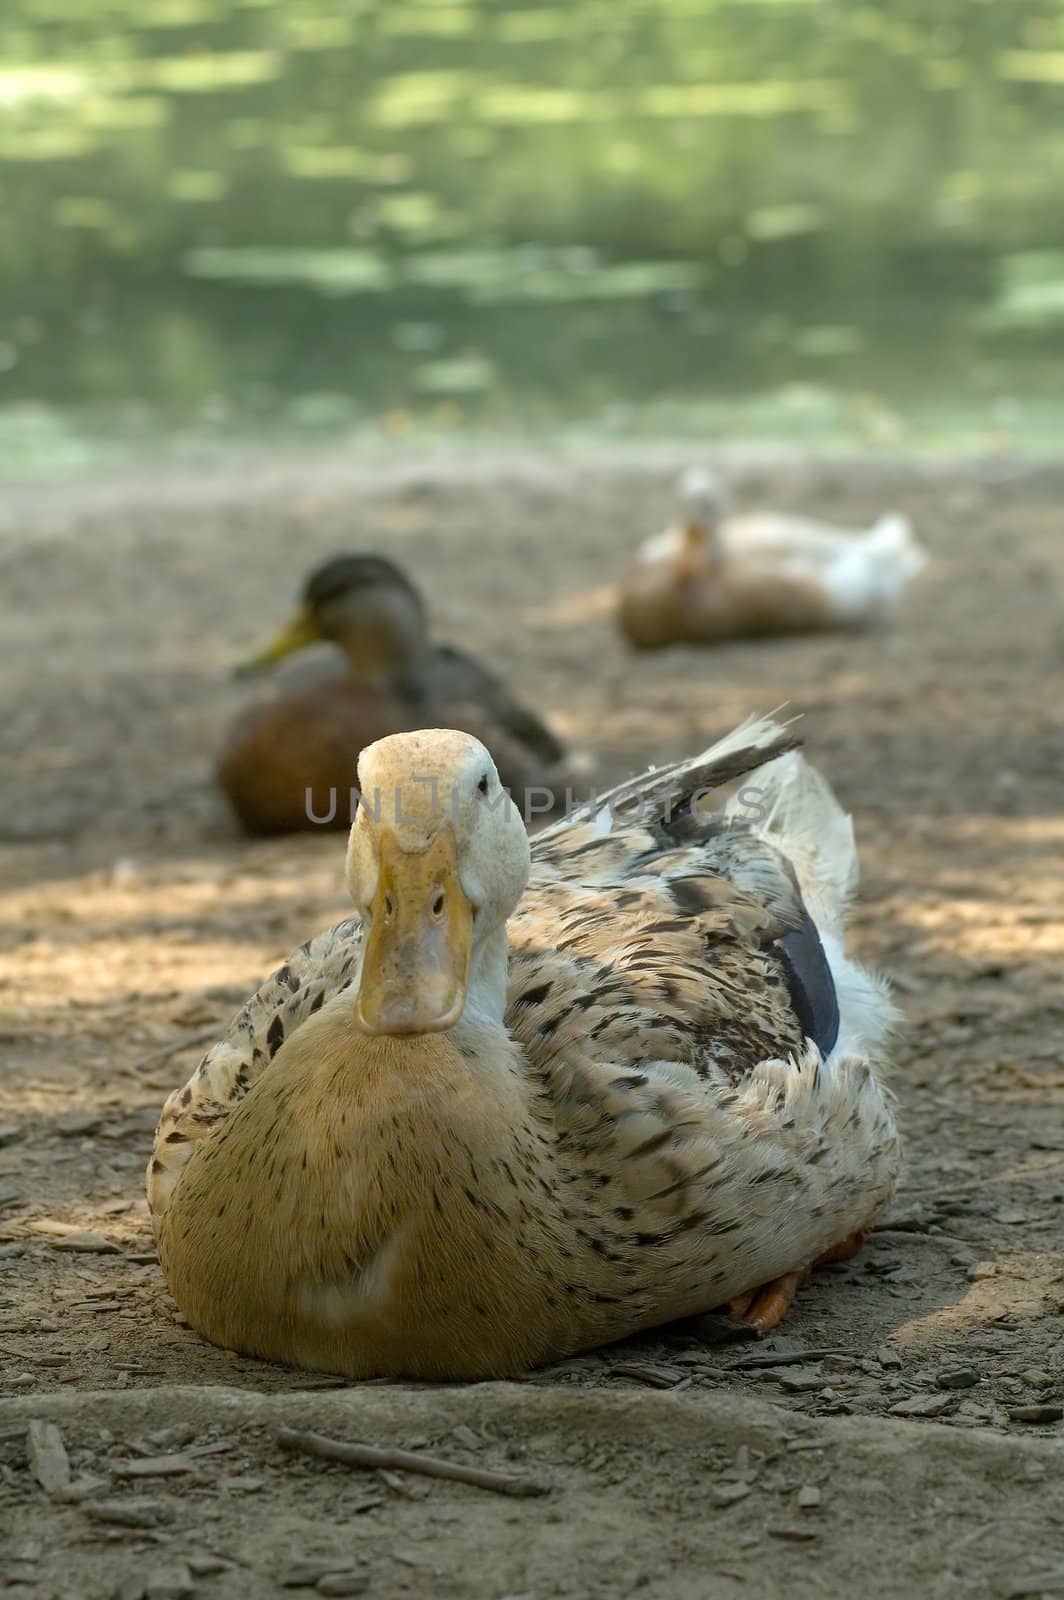 sitting ducks, distance blur, photo taken in central park, new york